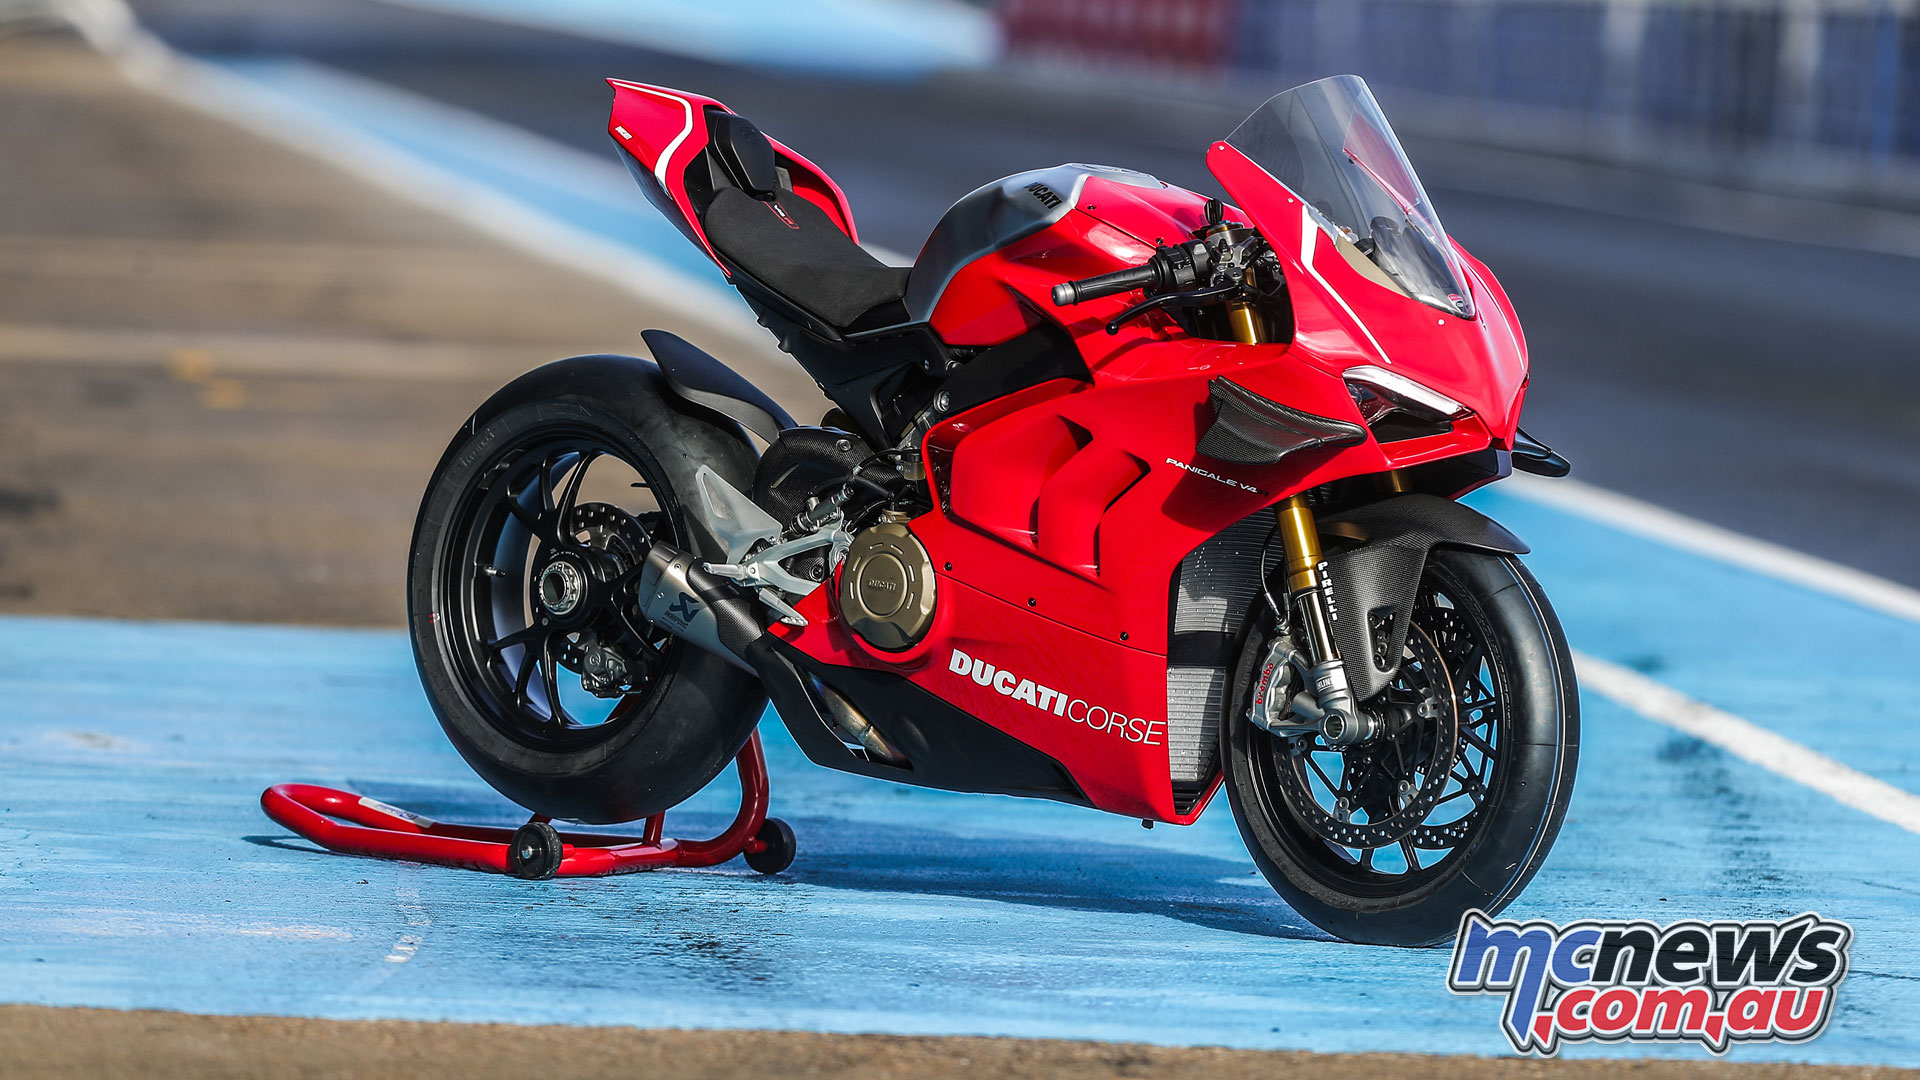 17+] Ducati Panigale V4 R Wallpapers - WallpaperSafari